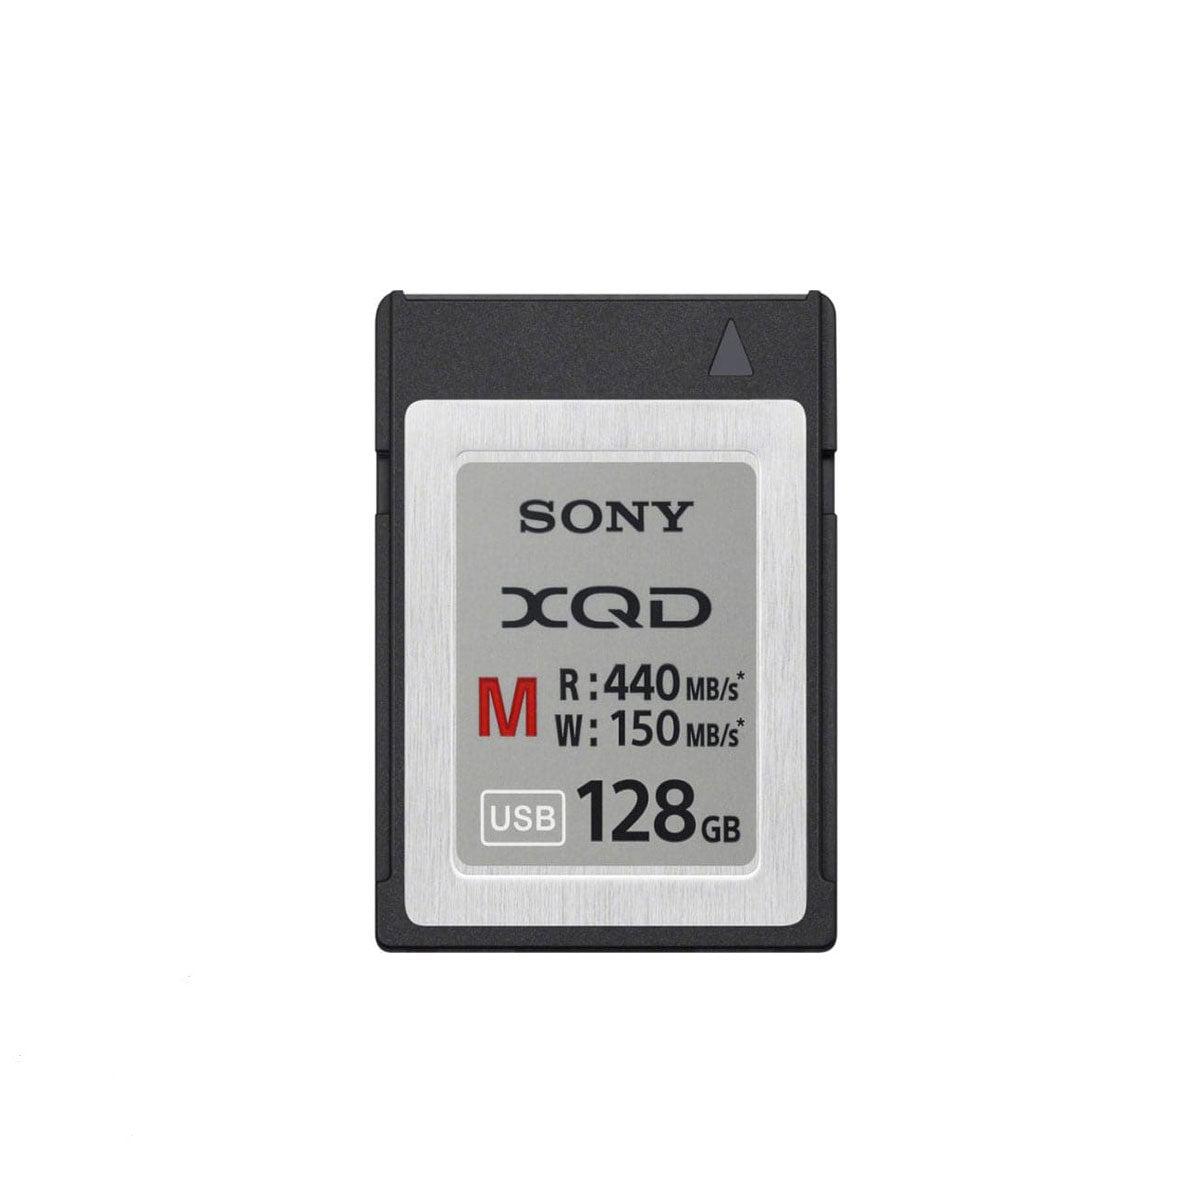 Sony XQD Card, 128GB, 440MB/s